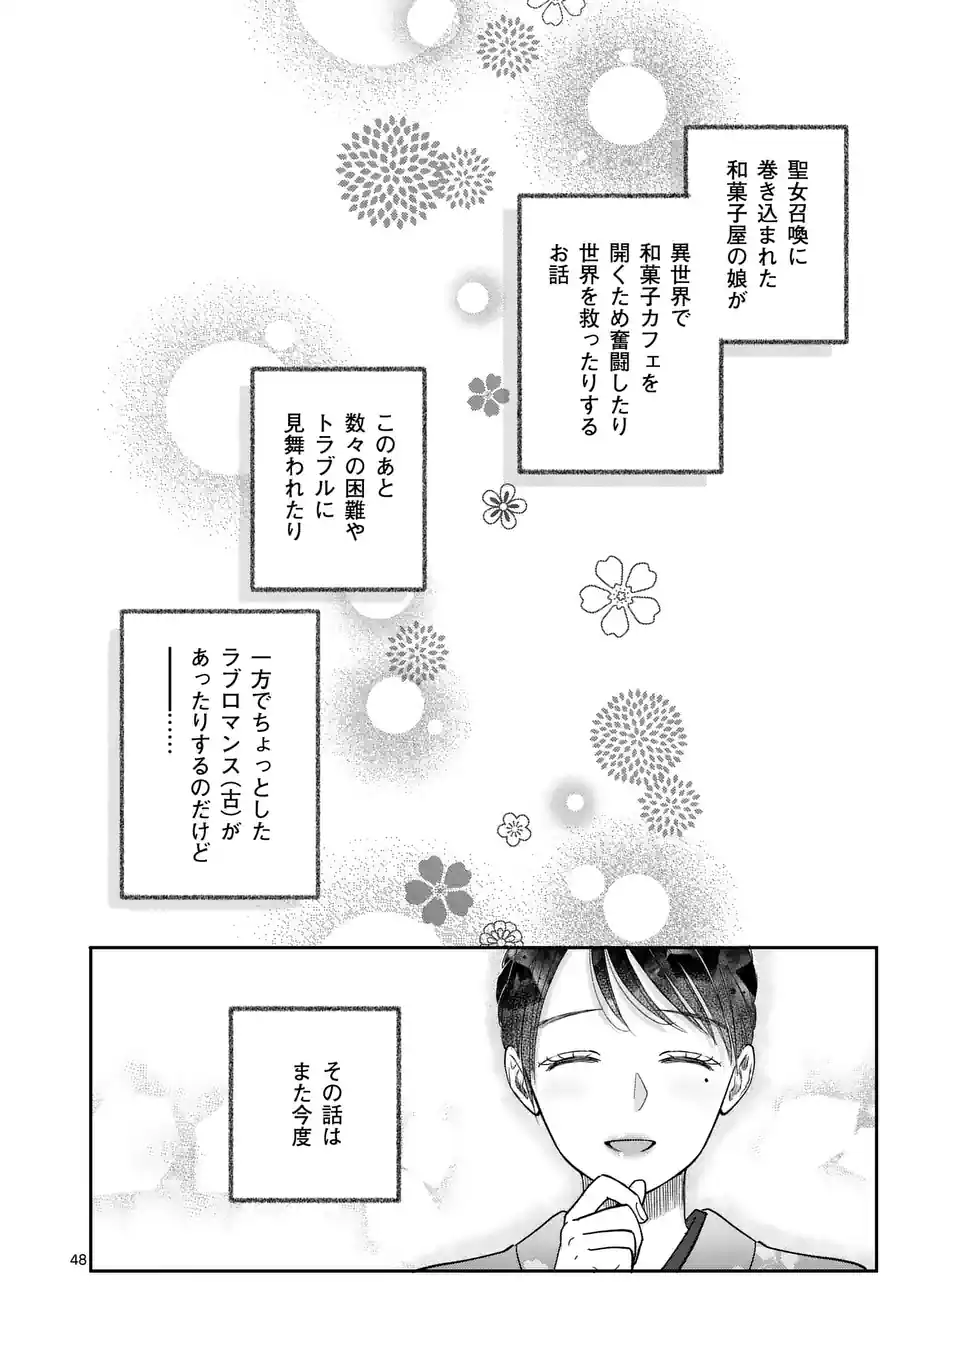 Makizoe de Isekai ni Yobidasareta no de, Sekai Kanmushi shite Wagashi Tsukurimasu - Chapter 1 - Page 48